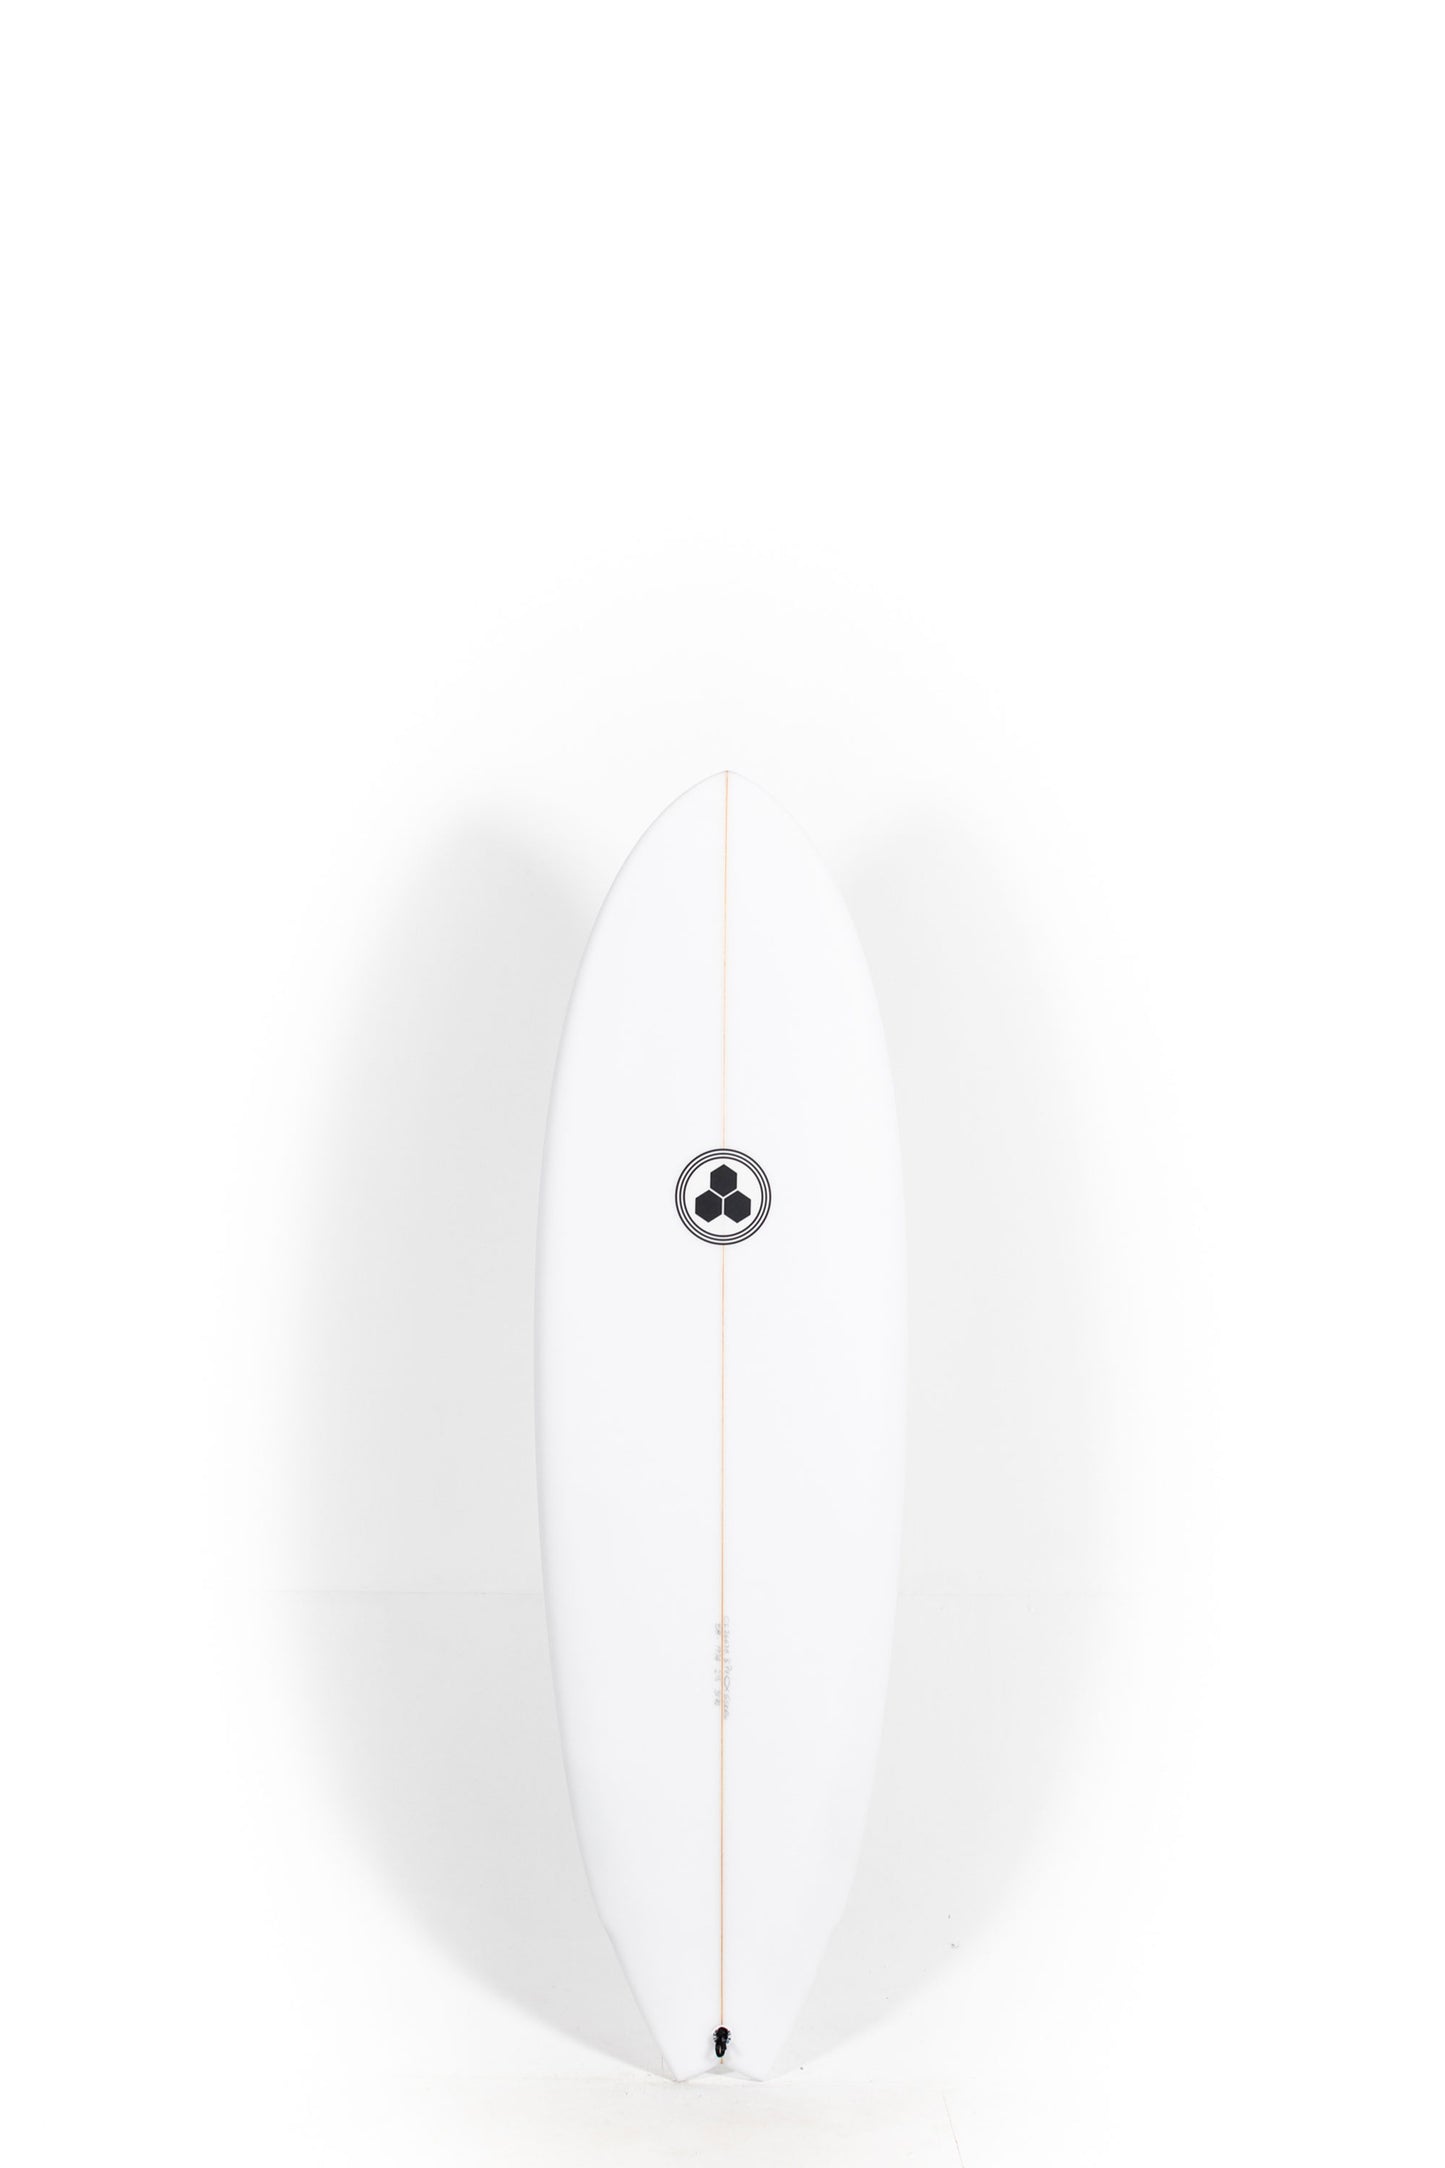 Pukas Surf Shop Channel Islands - G-Skate by Al Merrick - 5'8" x 19 5/8 x 2 1/2 - 31.4L - CI26678